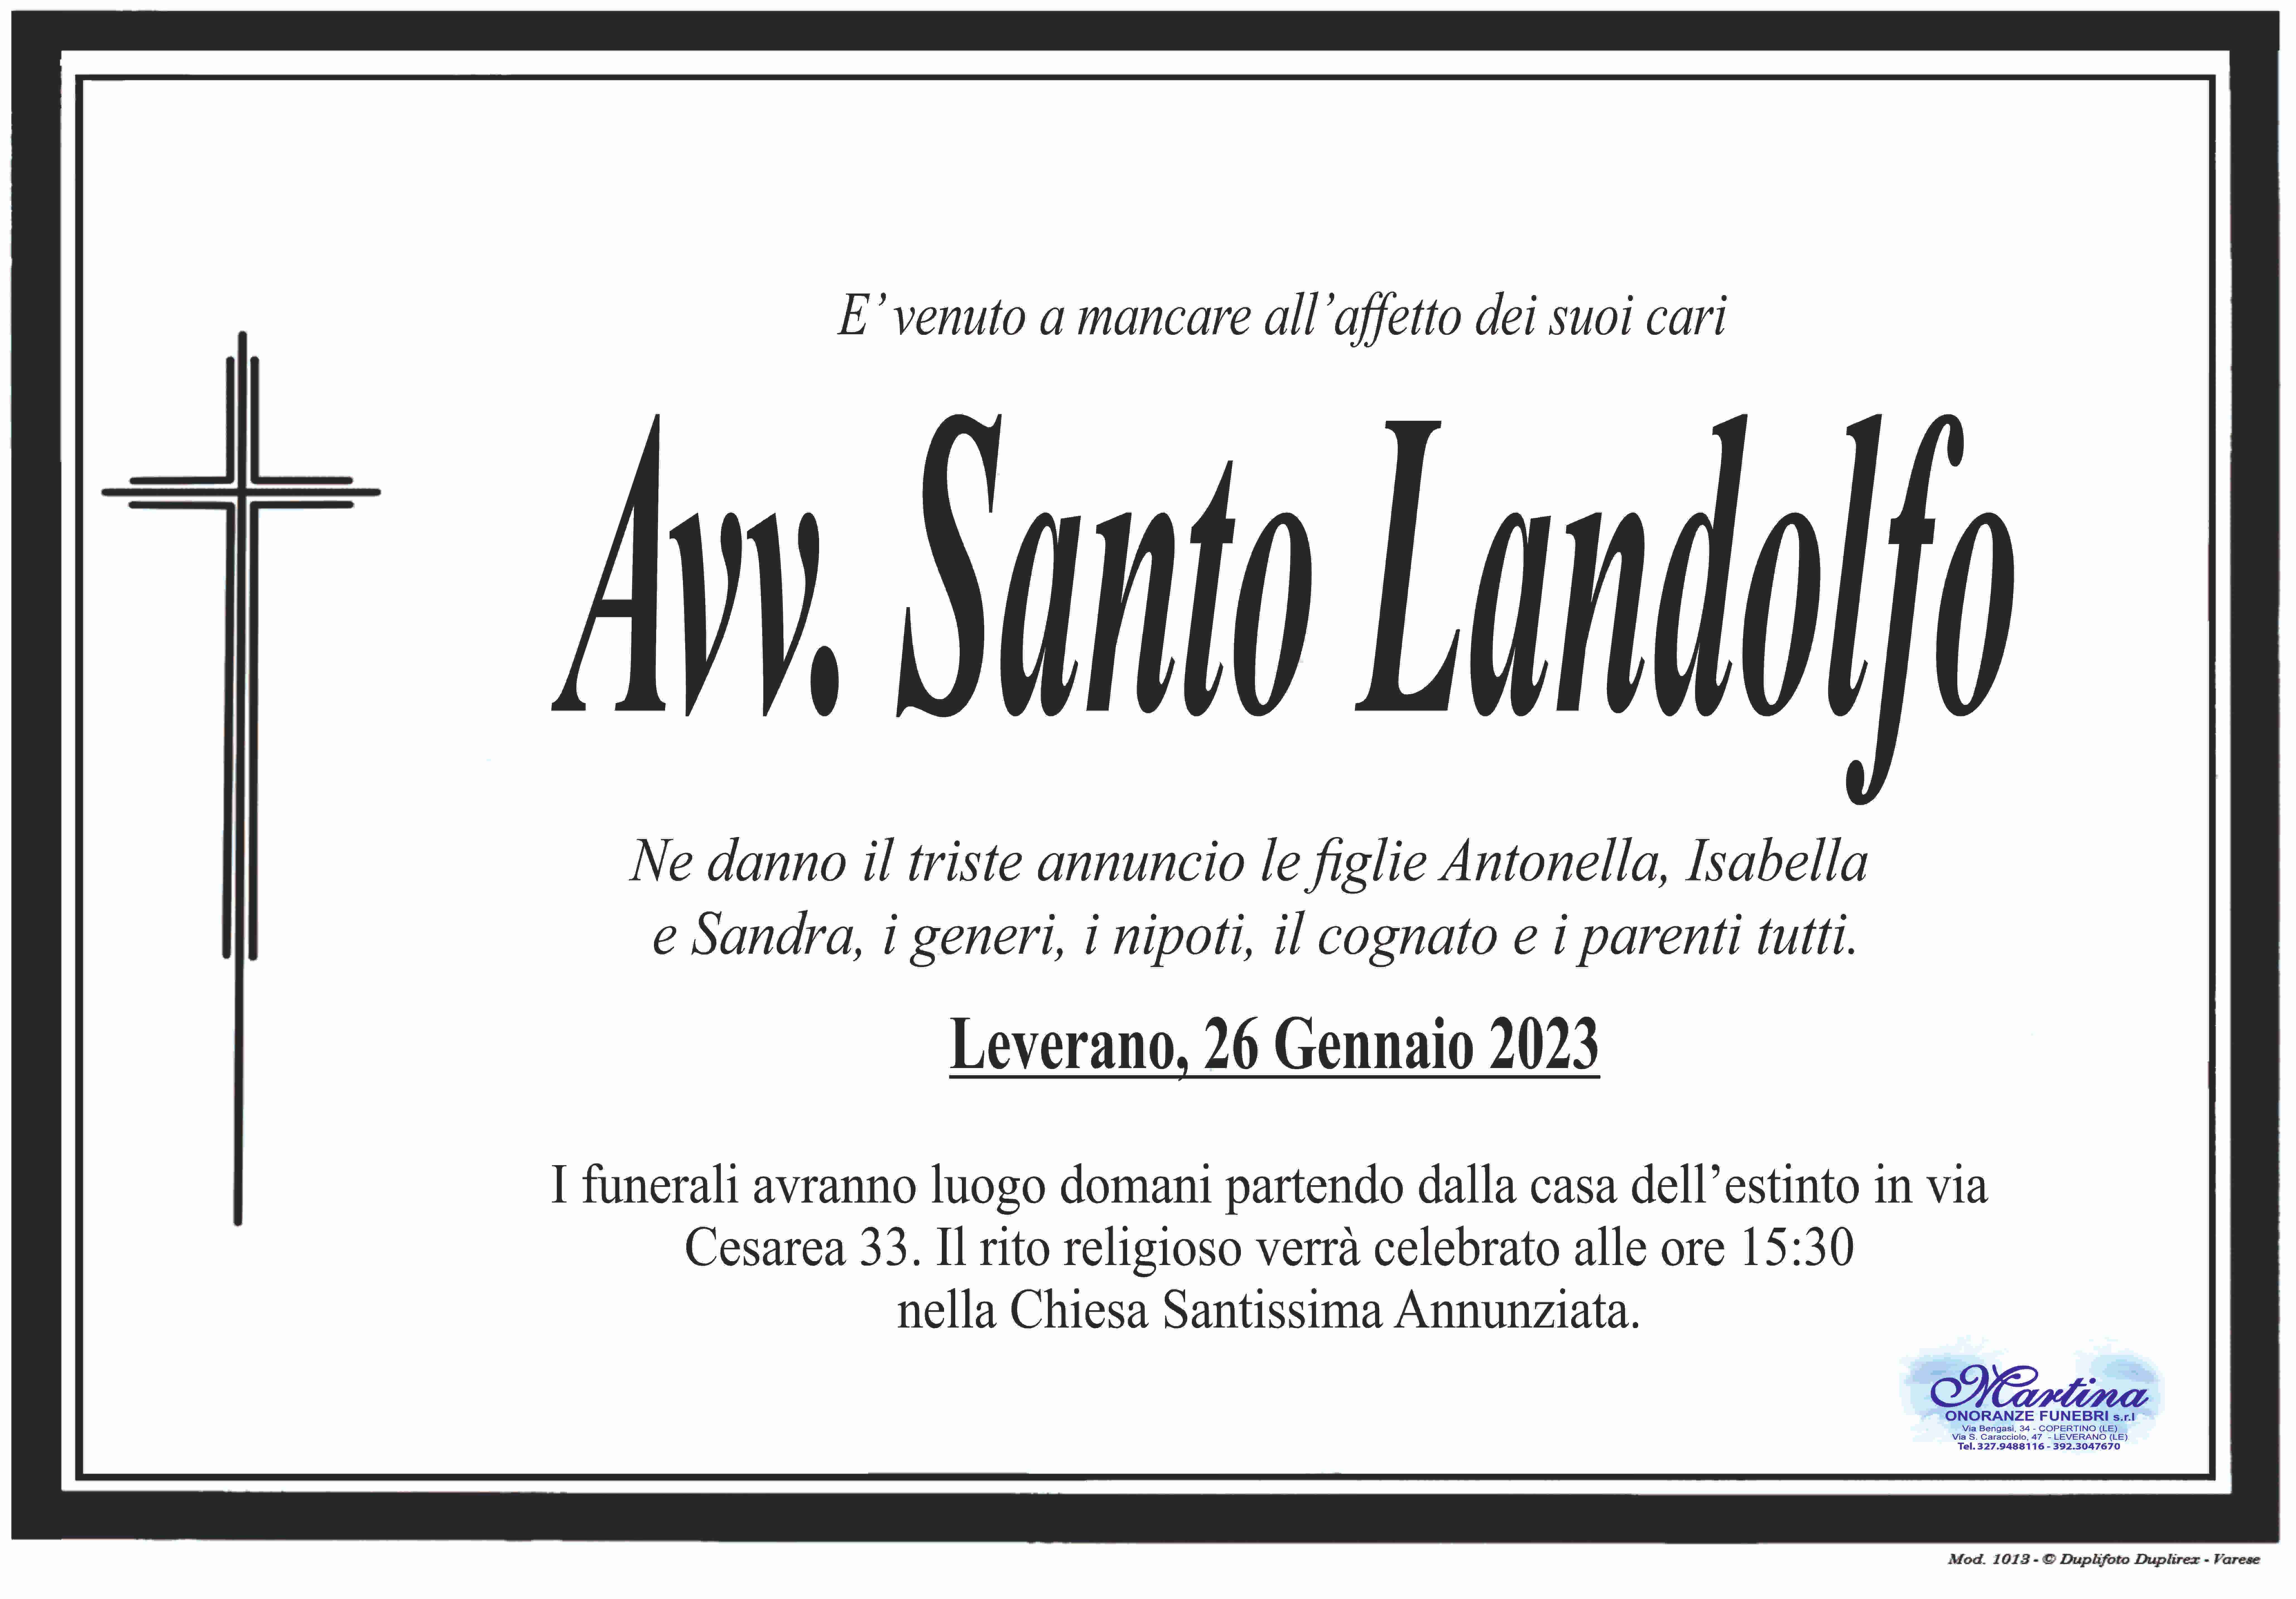 Santo Landolfo